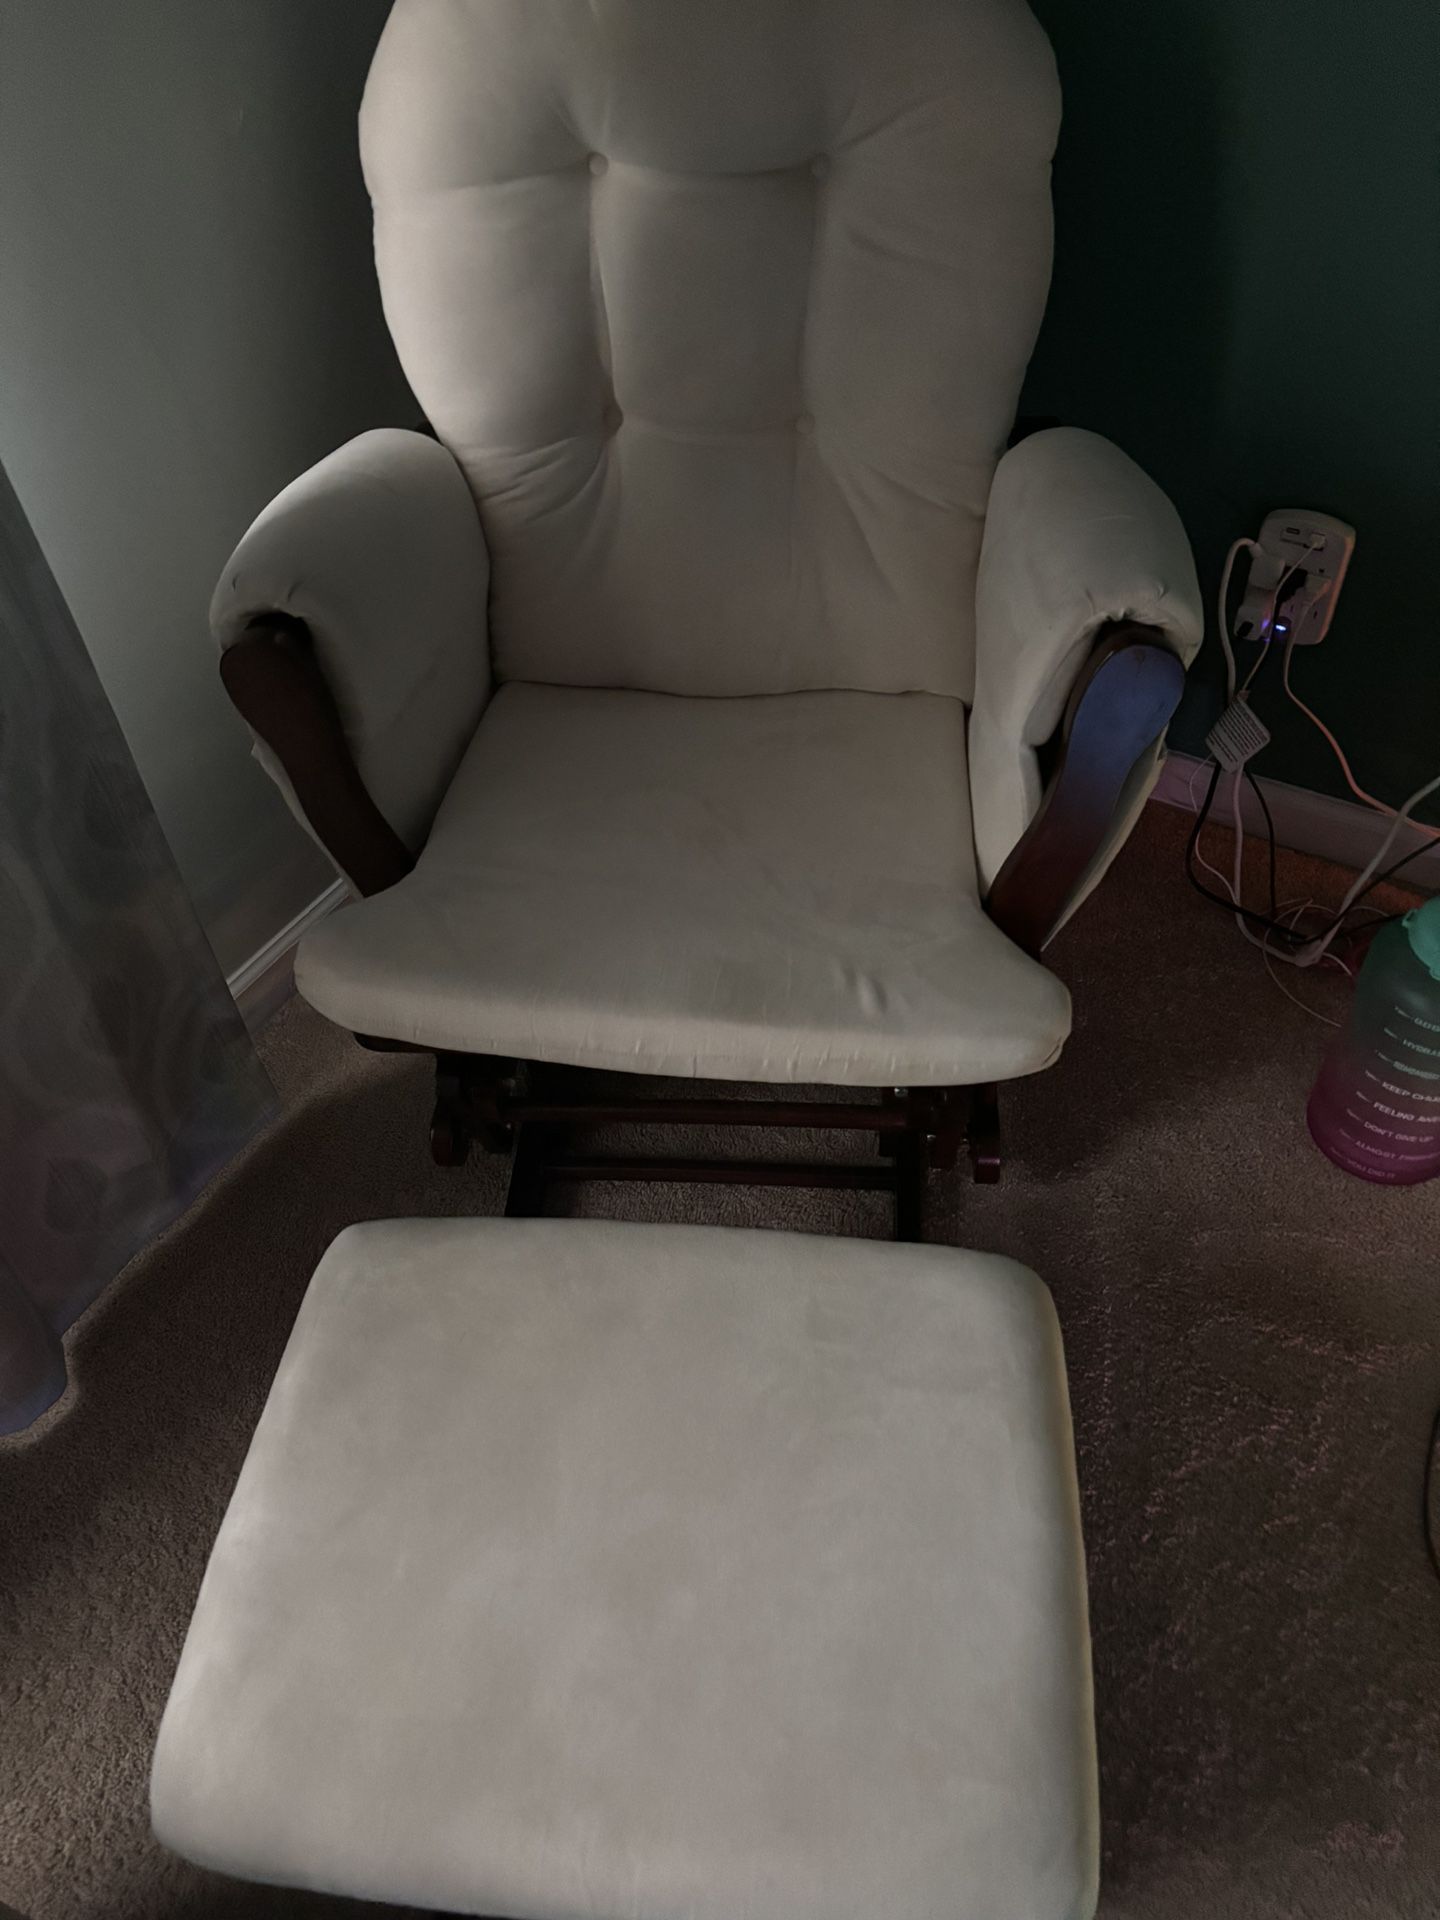 Baby Glider Rocker Chair